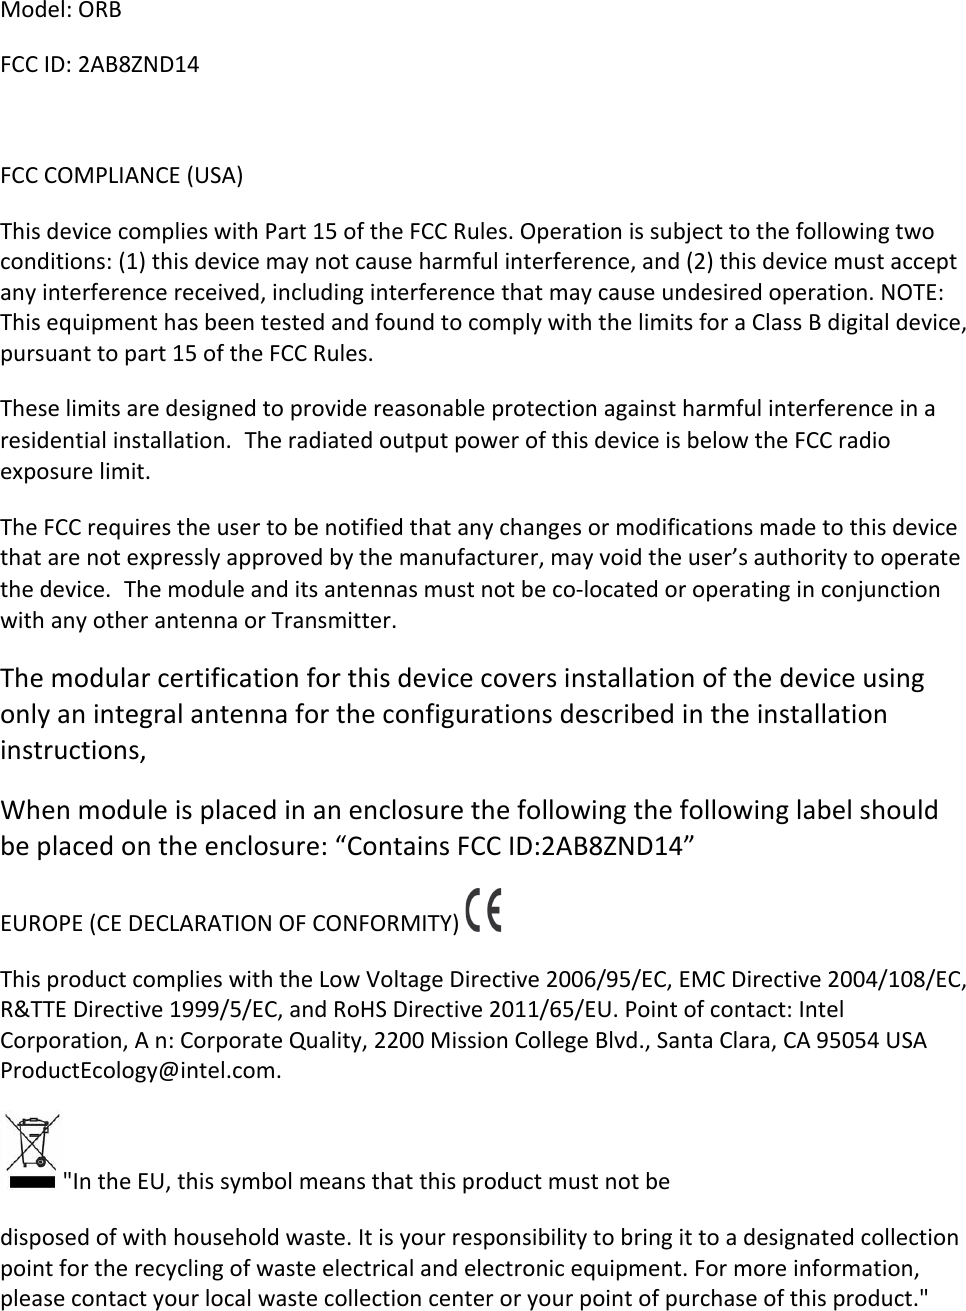 Model:&apos;ORB&apos;FCC&apos;ID:&apos;2AB8ZND14&apos;&apos;FCC&apos;COMPLIANCE&apos;(USA)&apos;&apos;This&apos;device&apos;complies&apos;with&apos;Part&apos;15&apos;of&apos;the&apos;FCC&apos;Rules.&apos;Operation&apos;is&apos;subject&apos;to&apos;the&apos;following&apos;two&apos;conditions:&apos;(1)&apos;this&apos;device&apos;may&apos;not&apos;cause&apos;harmful&apos;interference,&apos;and&apos;(2)&apos;this&apos;device&apos;must&apos;accept&apos;any&apos;interference&apos;received,&apos;including&apos;interference&apos;that&apos;may&apos;cause&apos;undesired&apos;operation.&apos;NOTE:&apos;This&apos;equipment&apos;has&apos;been&apos;tested&apos;and&apos;found&apos;to&apos;comply&apos;with&apos;the&apos;limits&apos;for&apos;a&apos;Class&apos;B&apos;digital&apos;device,&apos;pursuant&apos;to&apos;part&apos;15&apos;of&apos;the&apos;FCC&apos;Rules.&apos;&apos;These&apos;limits&apos;are&apos;designed&apos;to&apos;provide&apos;reasonable&apos;protection&apos;against&apos;harmful&apos;interference&apos;in&apos;a&apos;residential&apos;installation.The&apos;radiated&apos;output&apos;power&apos;of&apos;this&apos;device&apos;is&apos;below&apos;the&apos;FCC&apos;radio&apos;exposure&apos;limit.&apos;The&apos;FCC&apos;requires&apos;the&apos;user&apos;to&apos;be&apos;notified&apos;that&apos;any&apos;changes&apos;or&apos;modifications&apos;made&apos;to&apos;this&apos;device&apos;that&apos;are&apos;not&apos;expressly&apos;approved&apos;by&apos;the&apos;manufacturer,&apos;may&apos;void&apos;the&apos;user’s&apos;authority&apos;to&apos;operate&apos;the&apos;device.The&apos;module&apos;and&apos;its&apos;antennas&apos;must&apos;not&apos;be&apos;co-located&apos;or&apos;operating&apos;in&apos;conjunction&apos;with&apos;any&apos;other&apos;antenna&apos;or&apos;Transmitter.&apos;&apos;The&apos;modular&apos;certification&apos;for&apos;this&apos;device&apos;covers&apos;installation&apos;of&apos;the&apos;device&apos;using&apos;only&apos;an&apos;integral&apos;antenna&apos;for&apos;the&apos;configurations&apos;described&apos;in&apos;the&apos;installation&apos;instructions,&apos;When&apos;module&apos;is&apos;placed&apos;in&apos;an&apos;enclosure&apos;the&apos;following&apos;the&apos;following&apos;label&apos;should&apos;be&apos;placed&apos;on&apos;the&apos;enclosure:&apos;“Contains&apos;FCC&apos;ID:2AB8ZND14”&apos;&apos;EUROPE&apos;(CE&apos;DECLARATION&apos;OF&apos;CONFORMITY)&apos; &apos;This&apos;product&apos;complies&apos;with&apos;the&apos;Low&apos;Voltage&apos;Directive&apos;2006/95/EC,&apos;EMC&apos;Directive&apos;2004/108/EC,&apos;R&amp;TTE&apos;Directive&apos;1999/5/EC,&apos;and&apos;RoHS&apos;Directive&apos;2011/65/EU.&apos;Point&apos;of&apos;contact:&apos;Intel&apos;Corporation,&apos;A&apos;n:&apos;Corporate&apos;Quality,&apos;2200&apos;Mission&apos;College&apos;Blvd.,&apos;Santa&apos;Clara,&apos;CA&apos;95054&apos;USA&apos;ProductEcology@intel.com.&apos;&apos;&quot;In&apos;the&apos;EU,&apos;this&apos;symbol&apos;means&apos;that&apos;this&apos;product&apos;must&apos;not&apos;be&apos;&apos;disposed&apos;of&apos;with&apos;household&apos;waste.&apos;It&apos;is&apos;your&apos;responsibility&apos;to&apos;bring&apos;it&apos;to&apos;a&apos;designated&apos;collection&apos;point&apos;for&apos;the&apos;recycling&apos;of&apos;waste&apos;electrical&apos;and&apos;electronic&apos;equipment.&apos;For&apos;more&apos;information,&apos;please&apos;contact&apos;your&apos;local&apos;waste&apos;collection&apos;center&apos;or&apos;your&apos;point&apos;of&apos;purchase&apos;of&apos;this&apos;product.&quot;&apos;&apos;